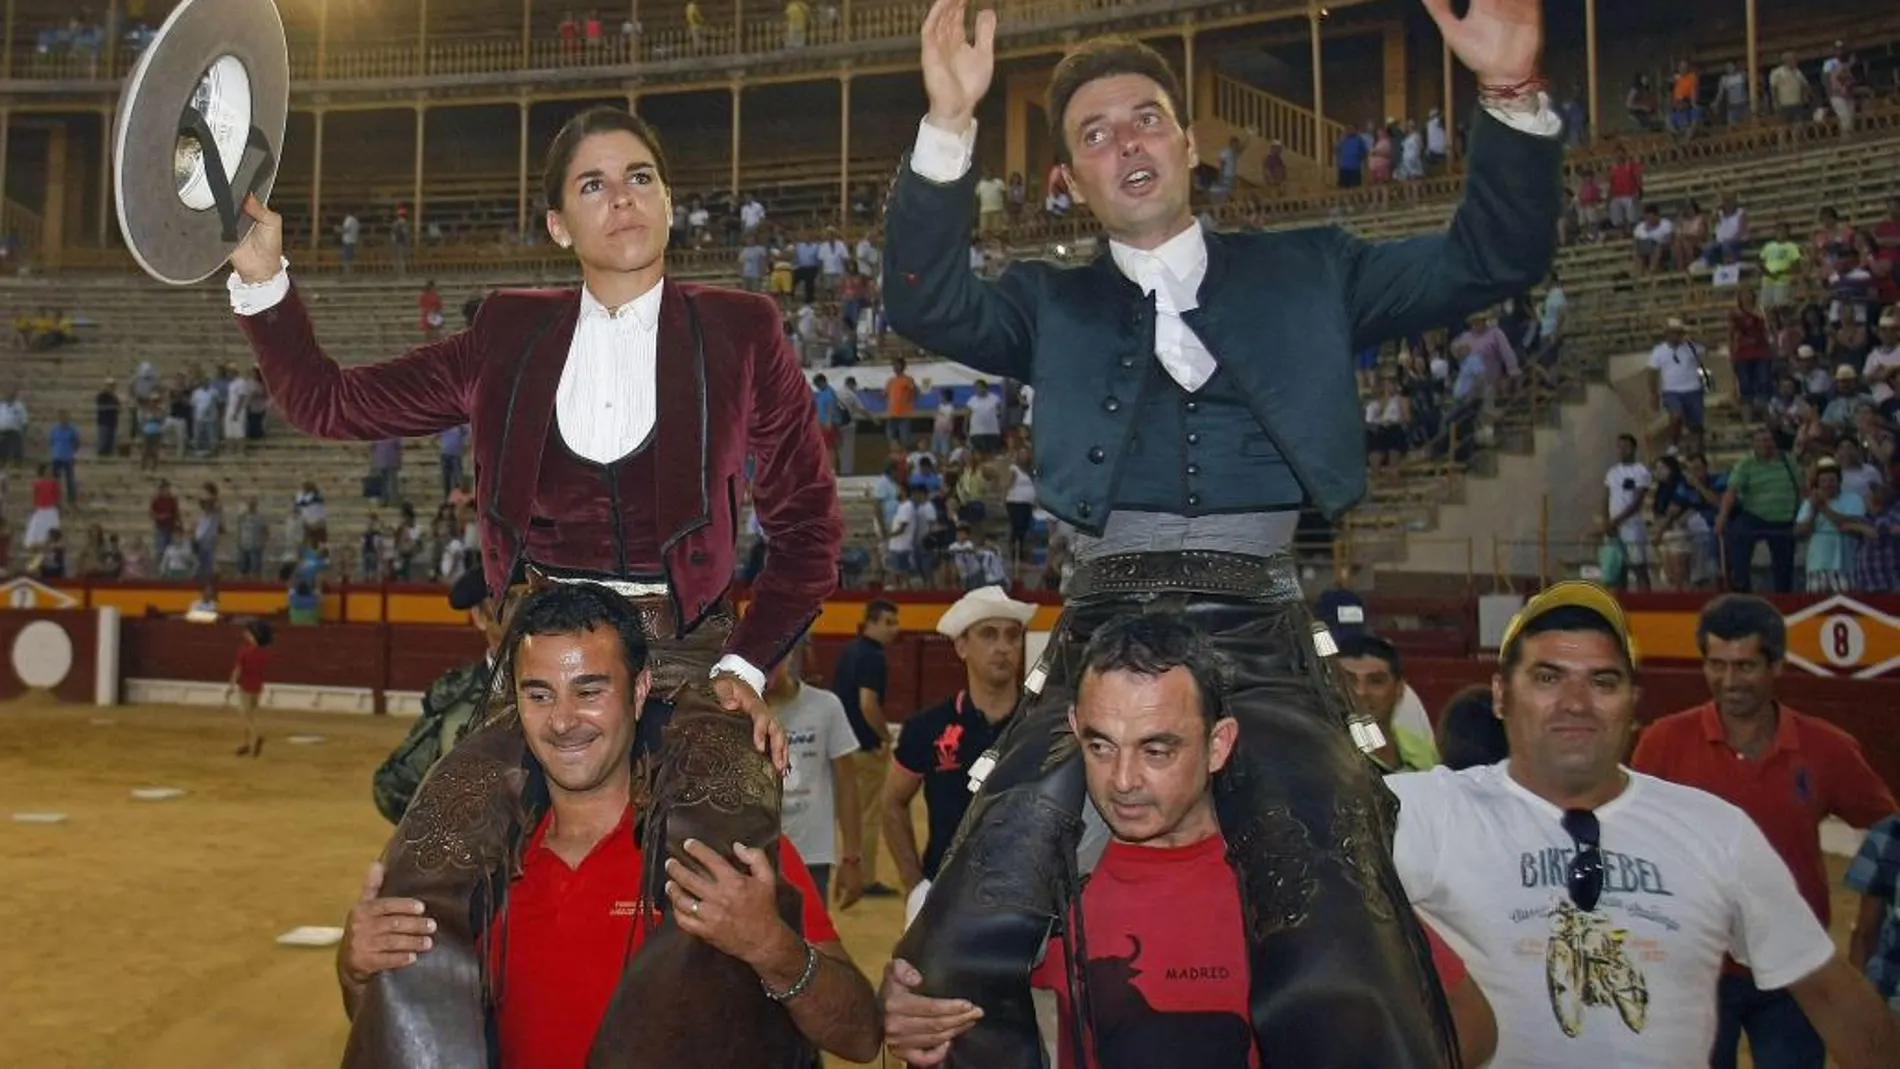 Lea Vicens y Andy Cartagena salen a hombros del primer festejo de rejones de la feria de Hogueras